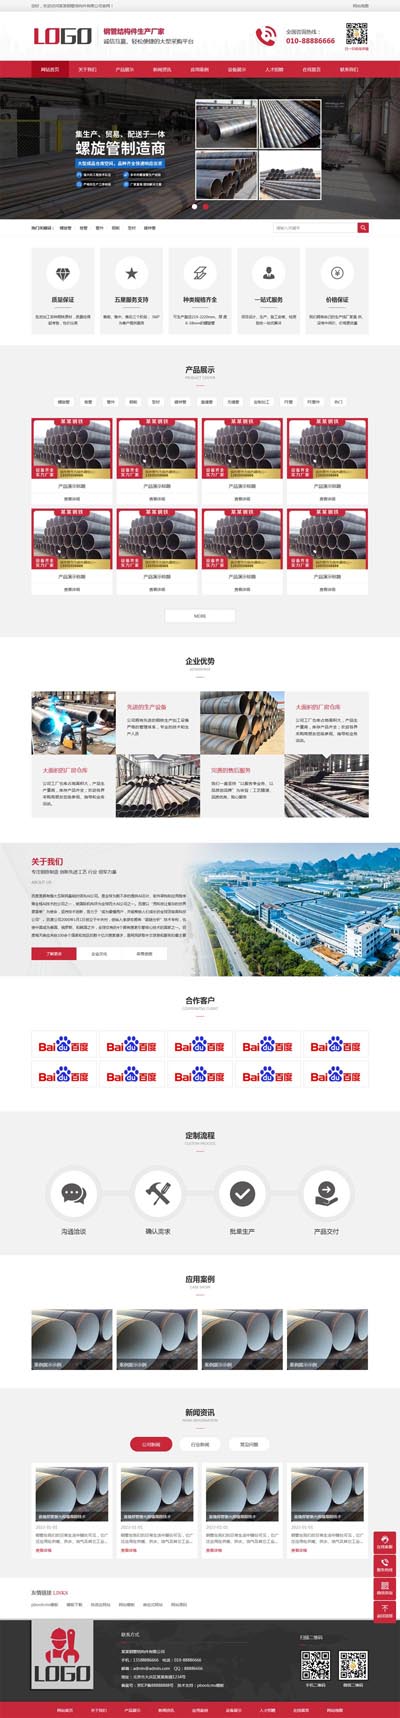 (带手机)钢管结构件企业网站模板 钢管销售施工设备建材机械设备网站源码